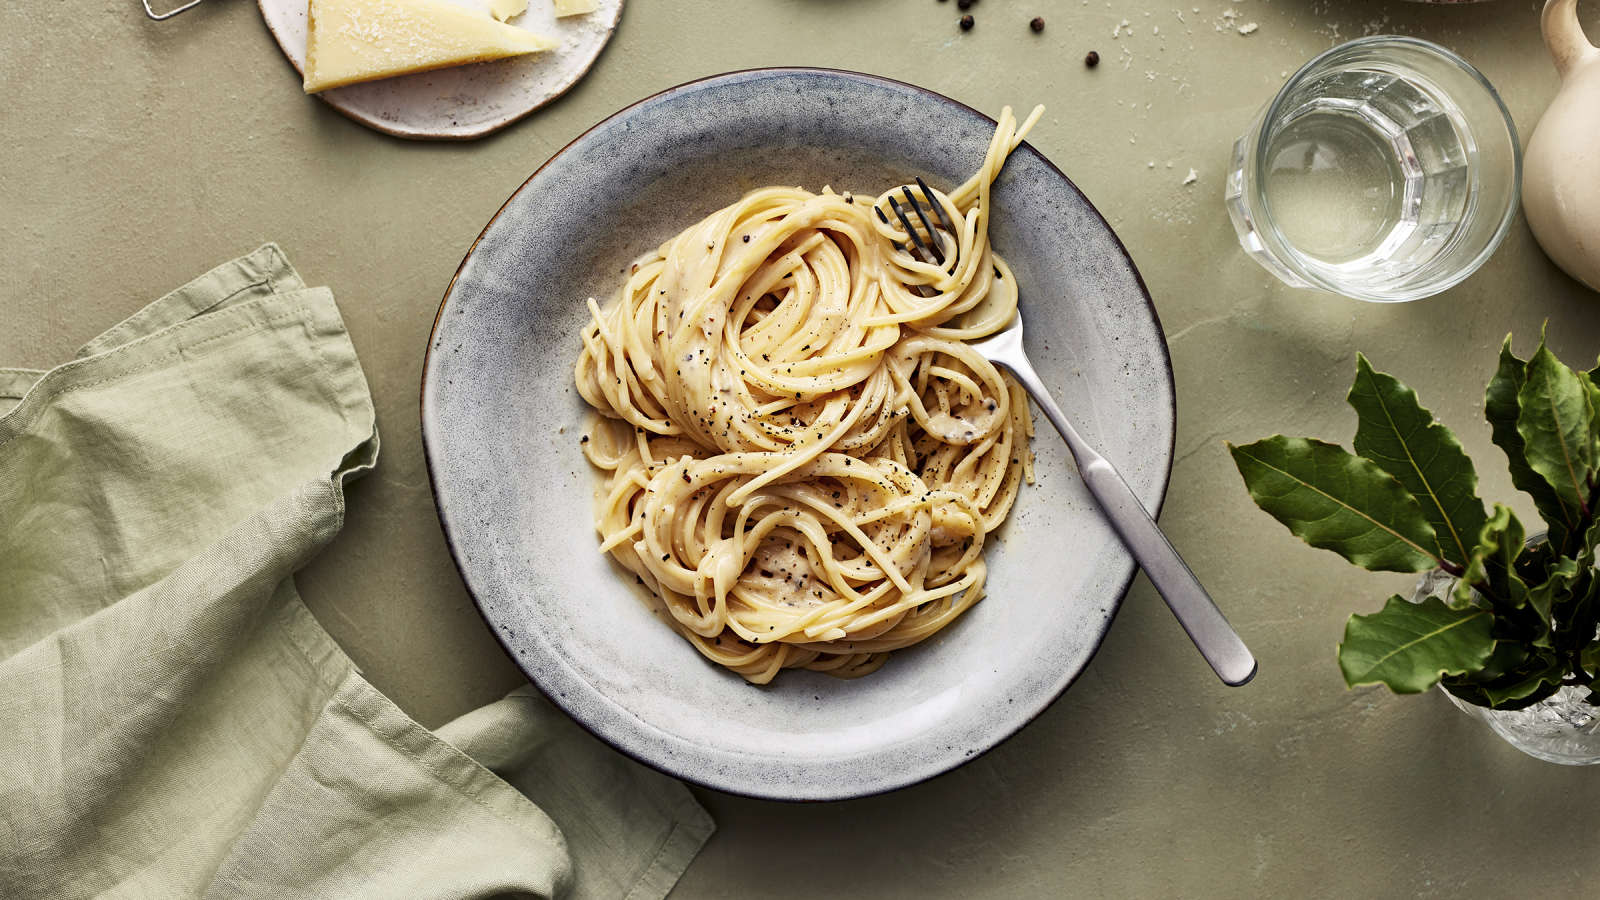 Cacio e pepe -pastaa lautasella. Annoksen vieressä vesilasi, vihreä liina, pecorinojuustoa, pippureita ja kasvin lehtiä.